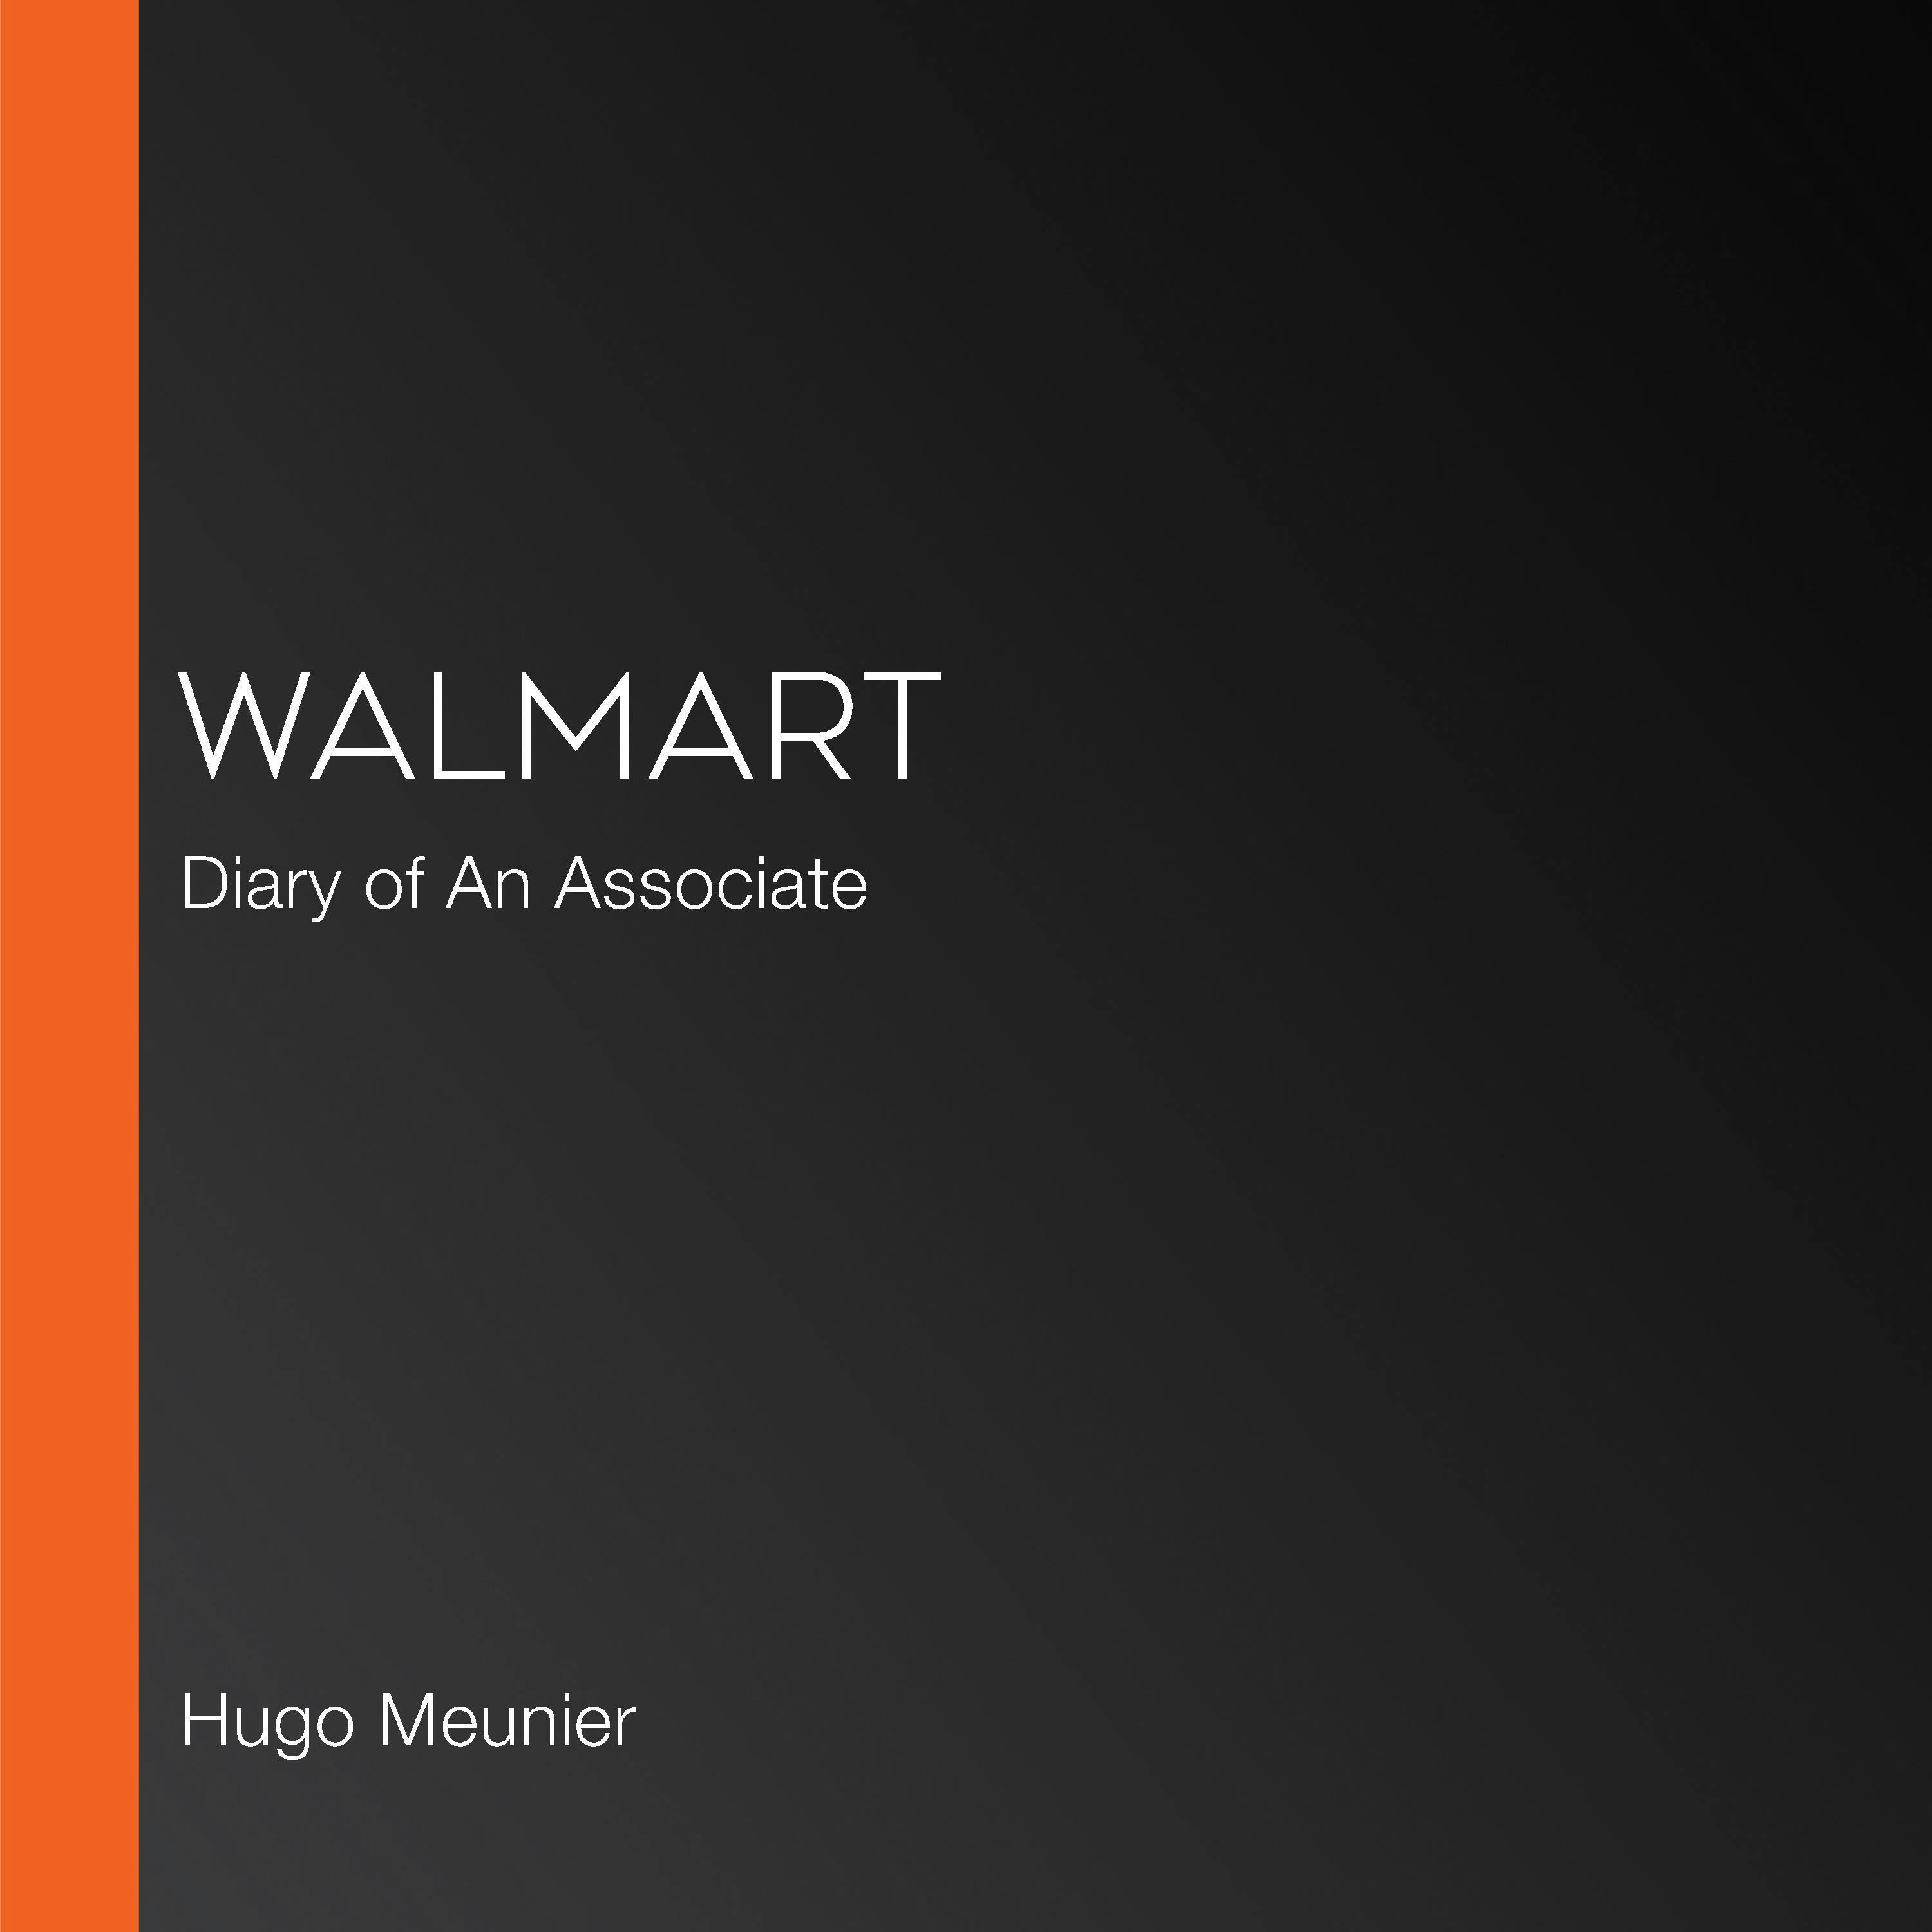 Walmart: Diary of An Associate - Hugo Meunier